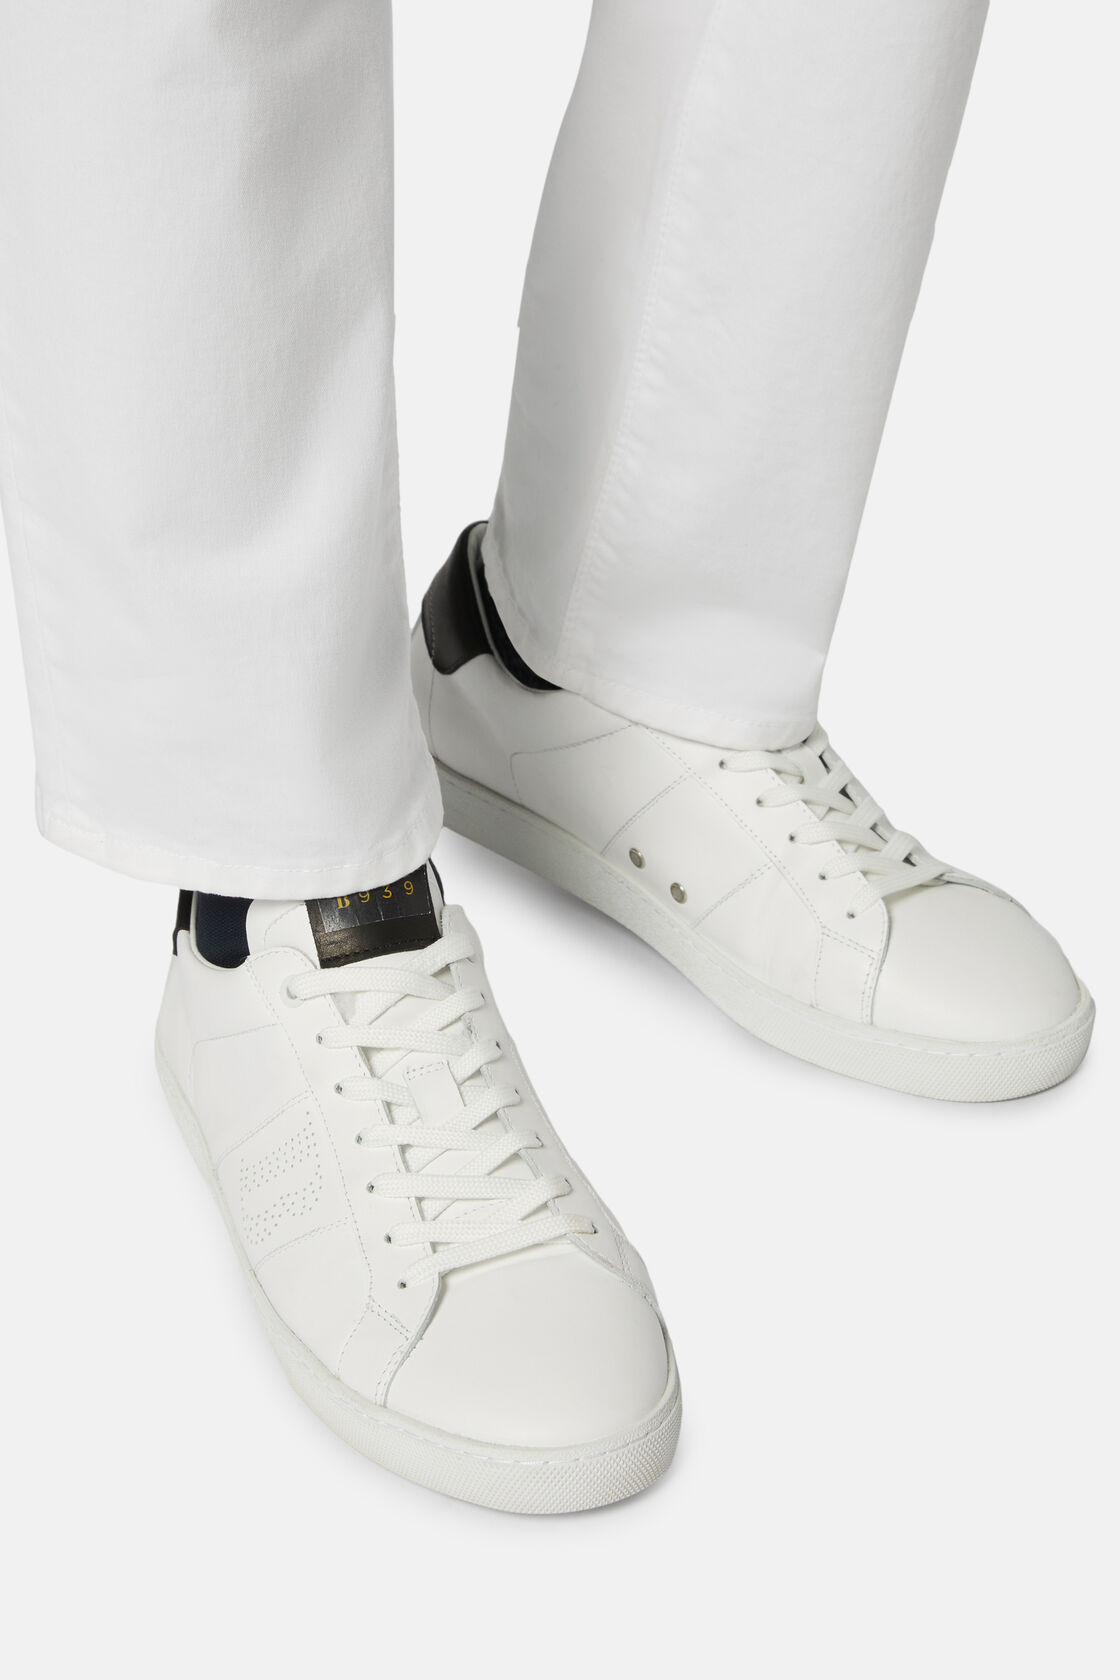 Schwarz-Weiße Ledersneaker, Schwarz - Weiß, hi-res